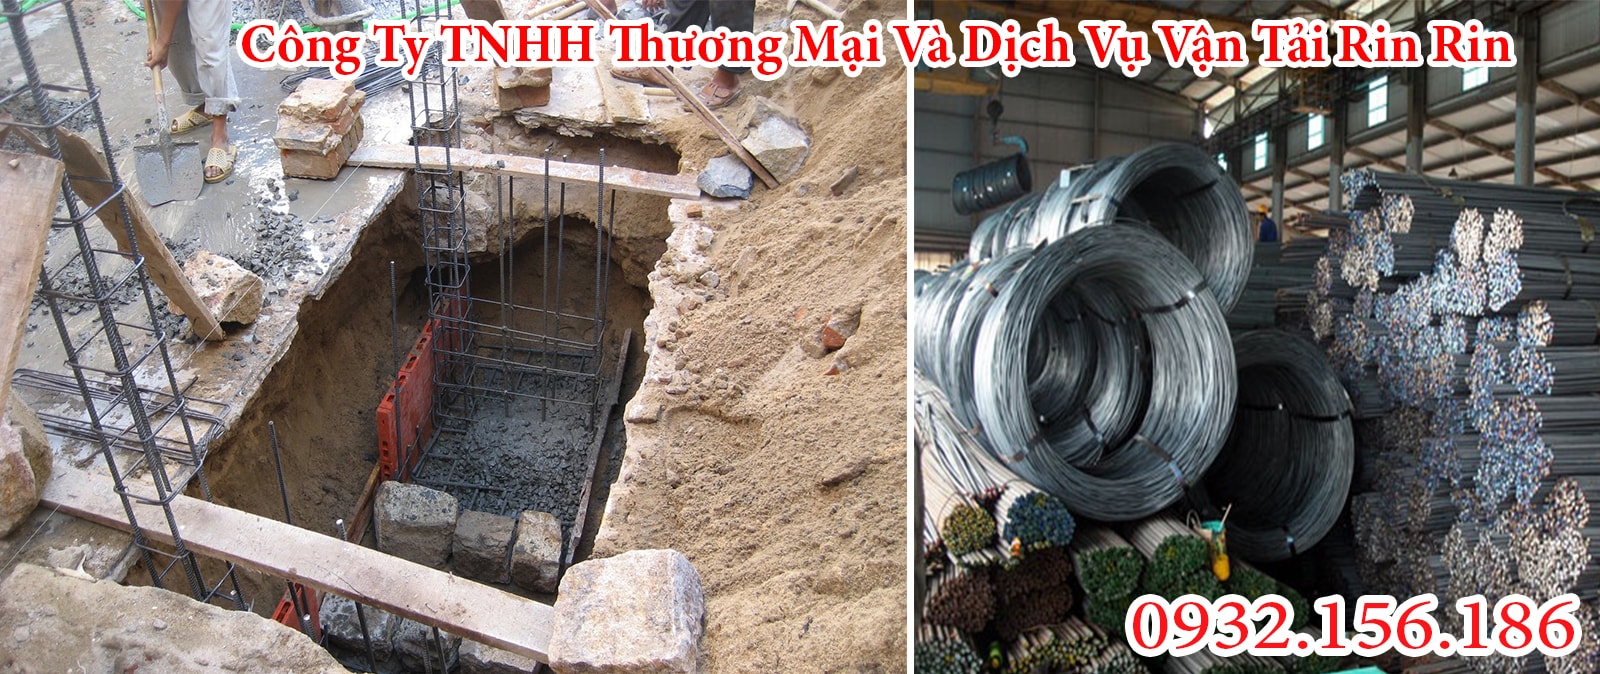 Cung cấp vật liệu xây dựng trên địa bàn Đà Nẵng